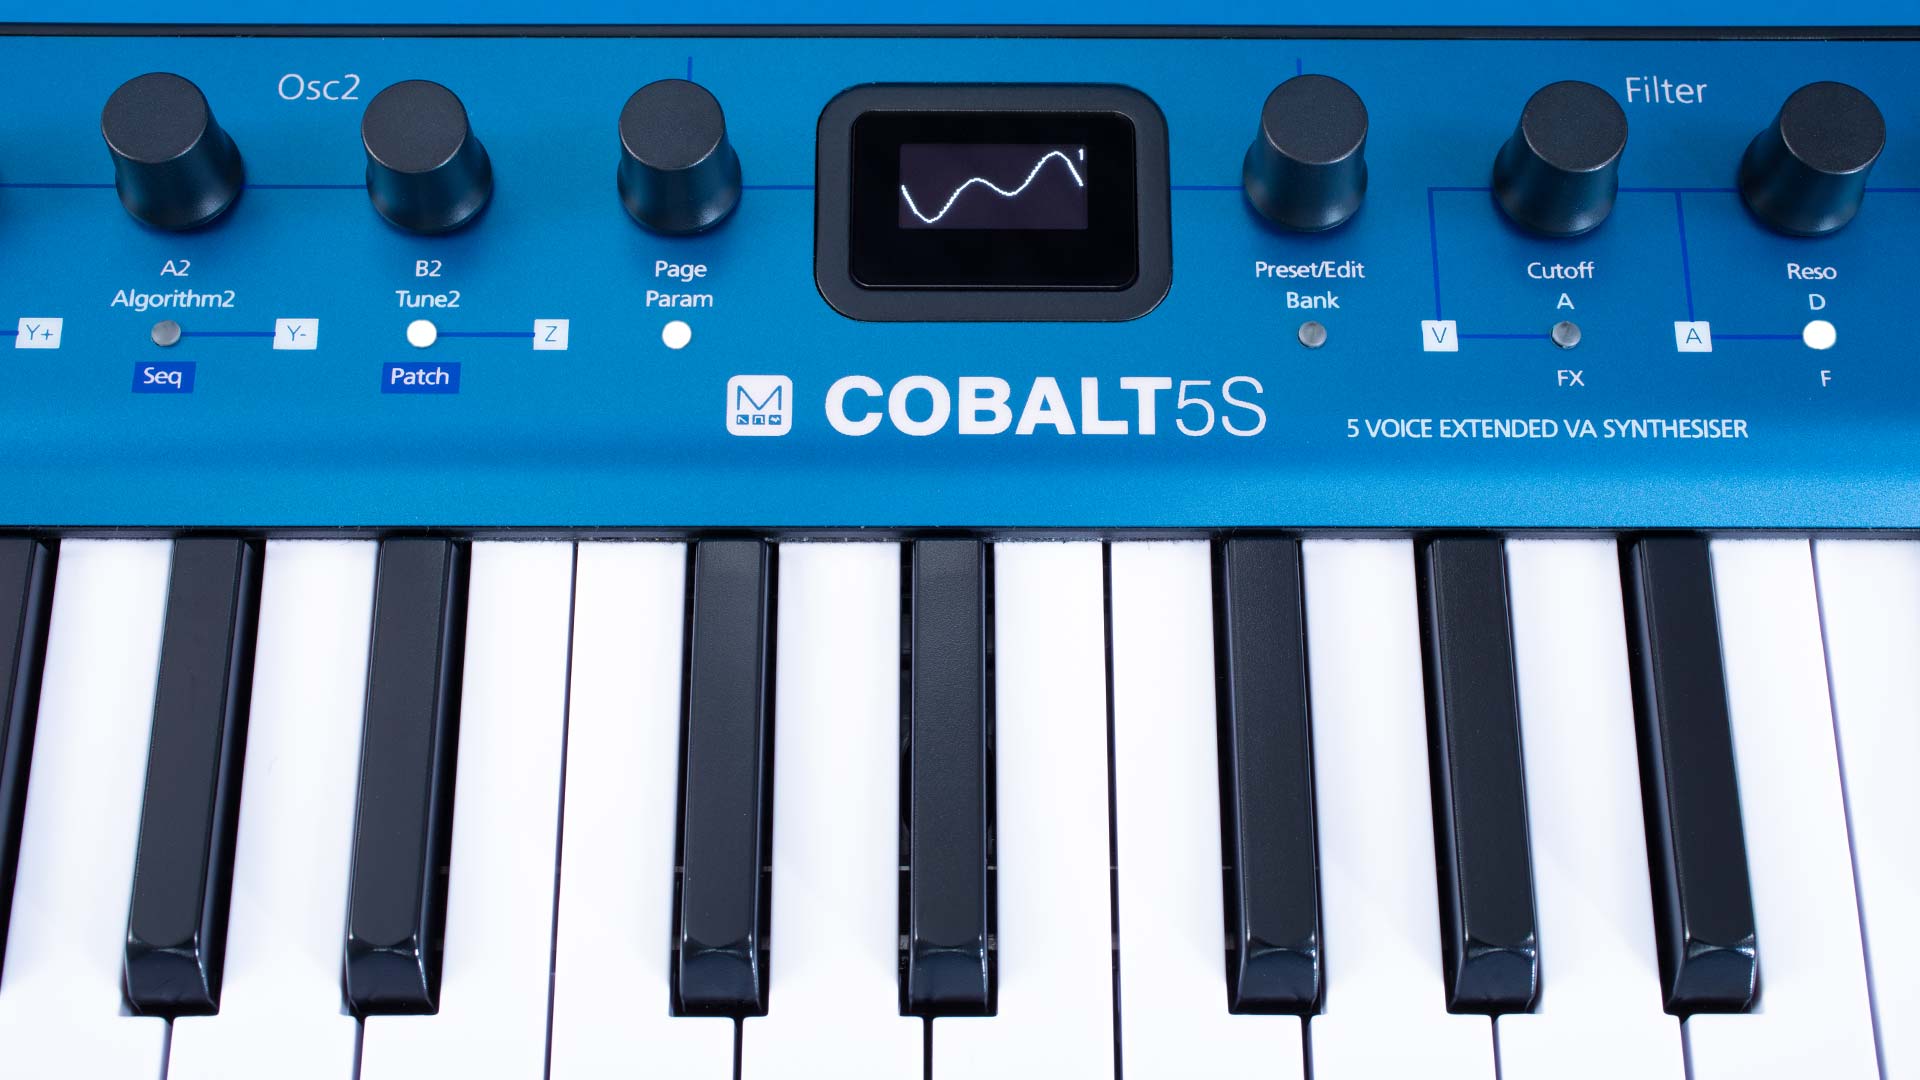 Mucho sonido y opciones en un formato tan compacto: Cobalt5S es increíblemente pequeño en tamaño, pero grande en posibilidades